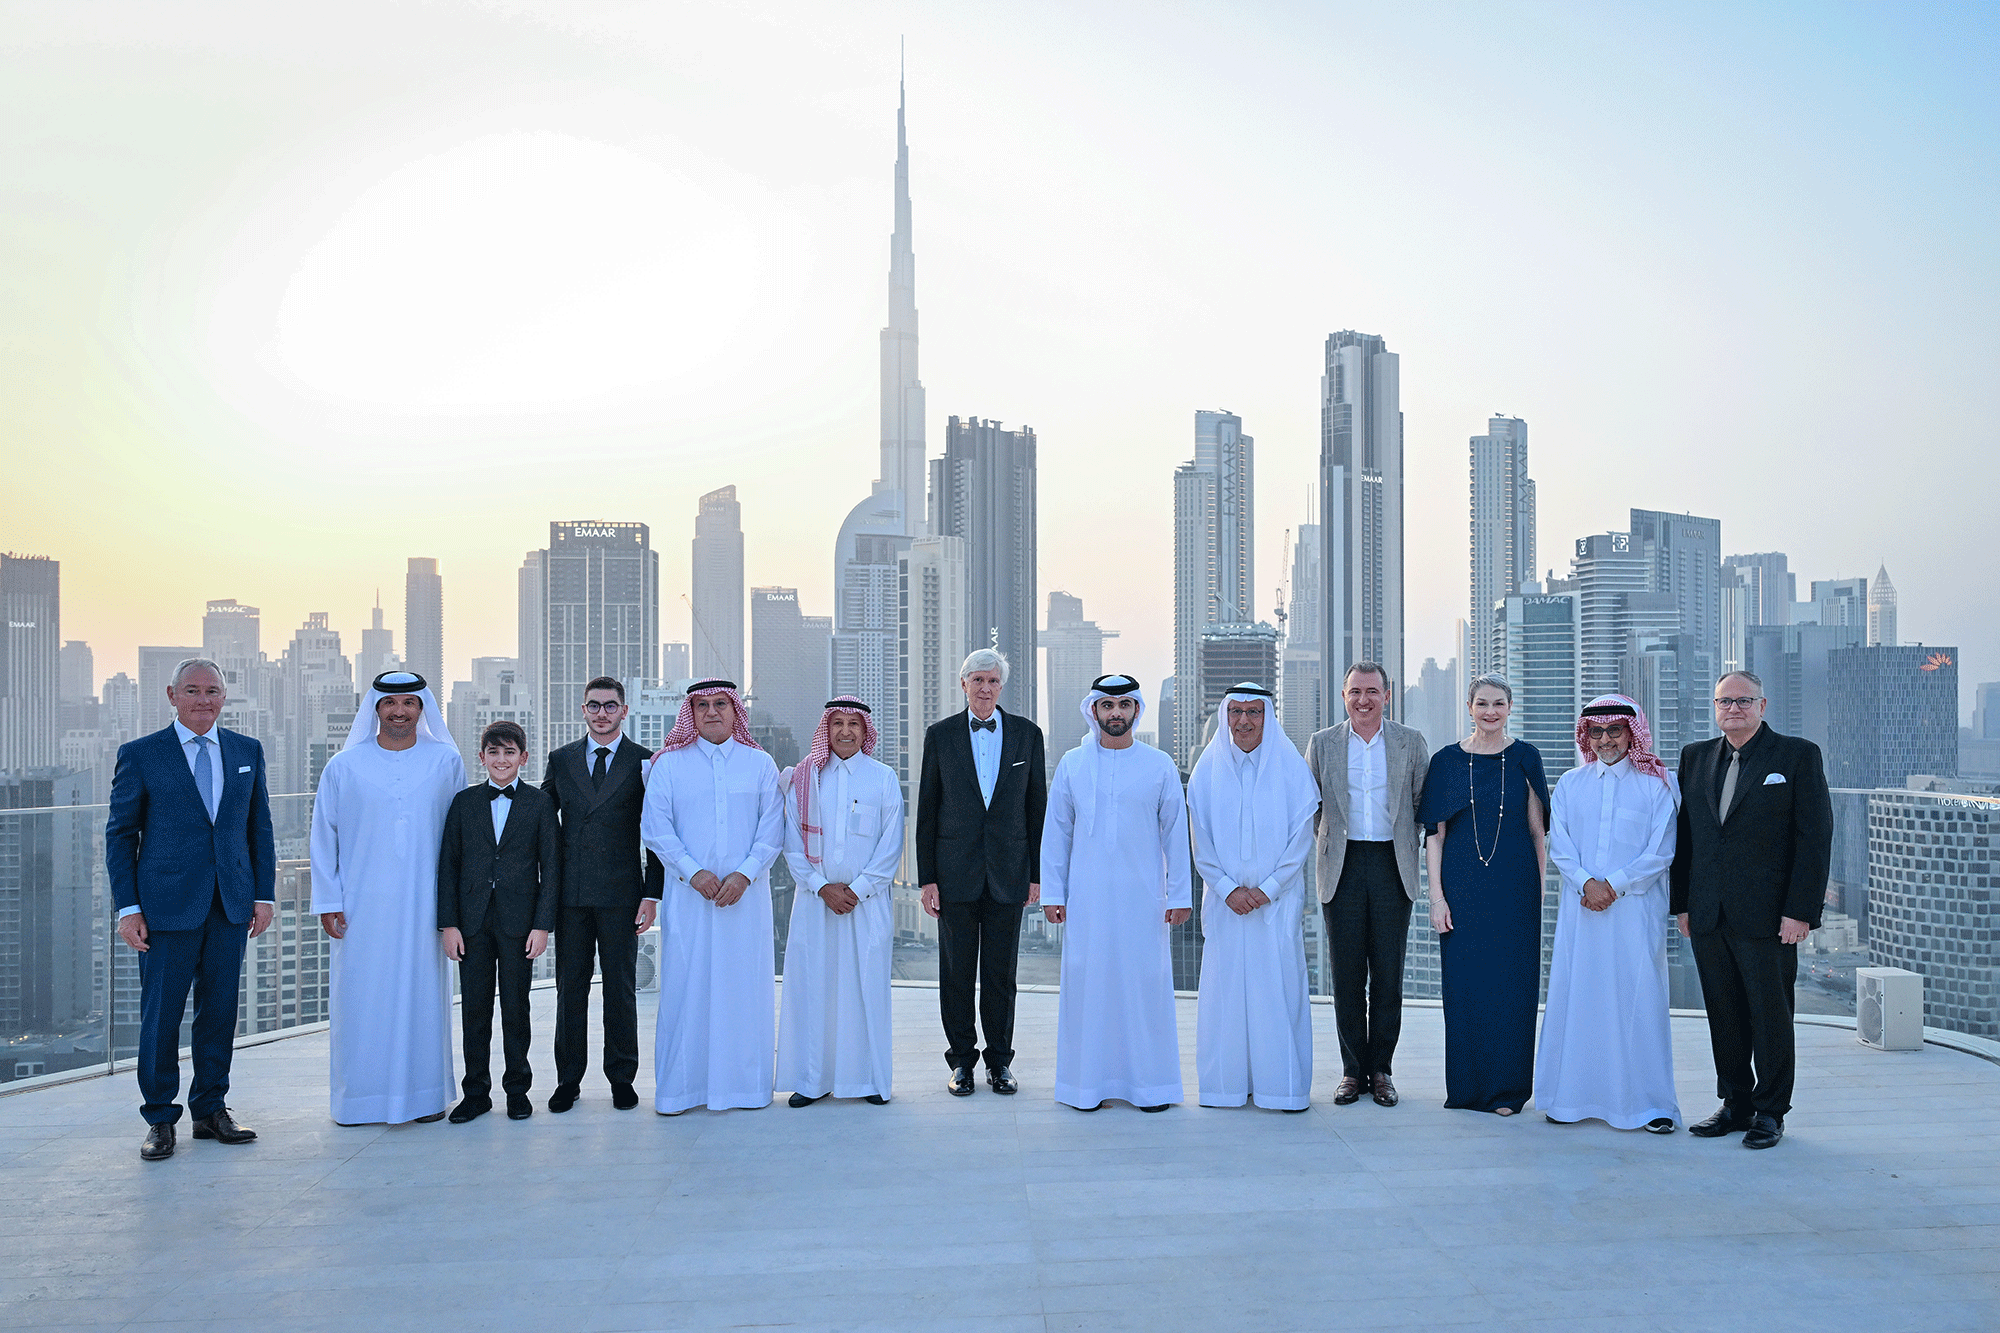 صورة منصور بن محمد: دور رائد للقطاع الخاص في تعزيز مكانة دبي كوجهة سياحية عالمية